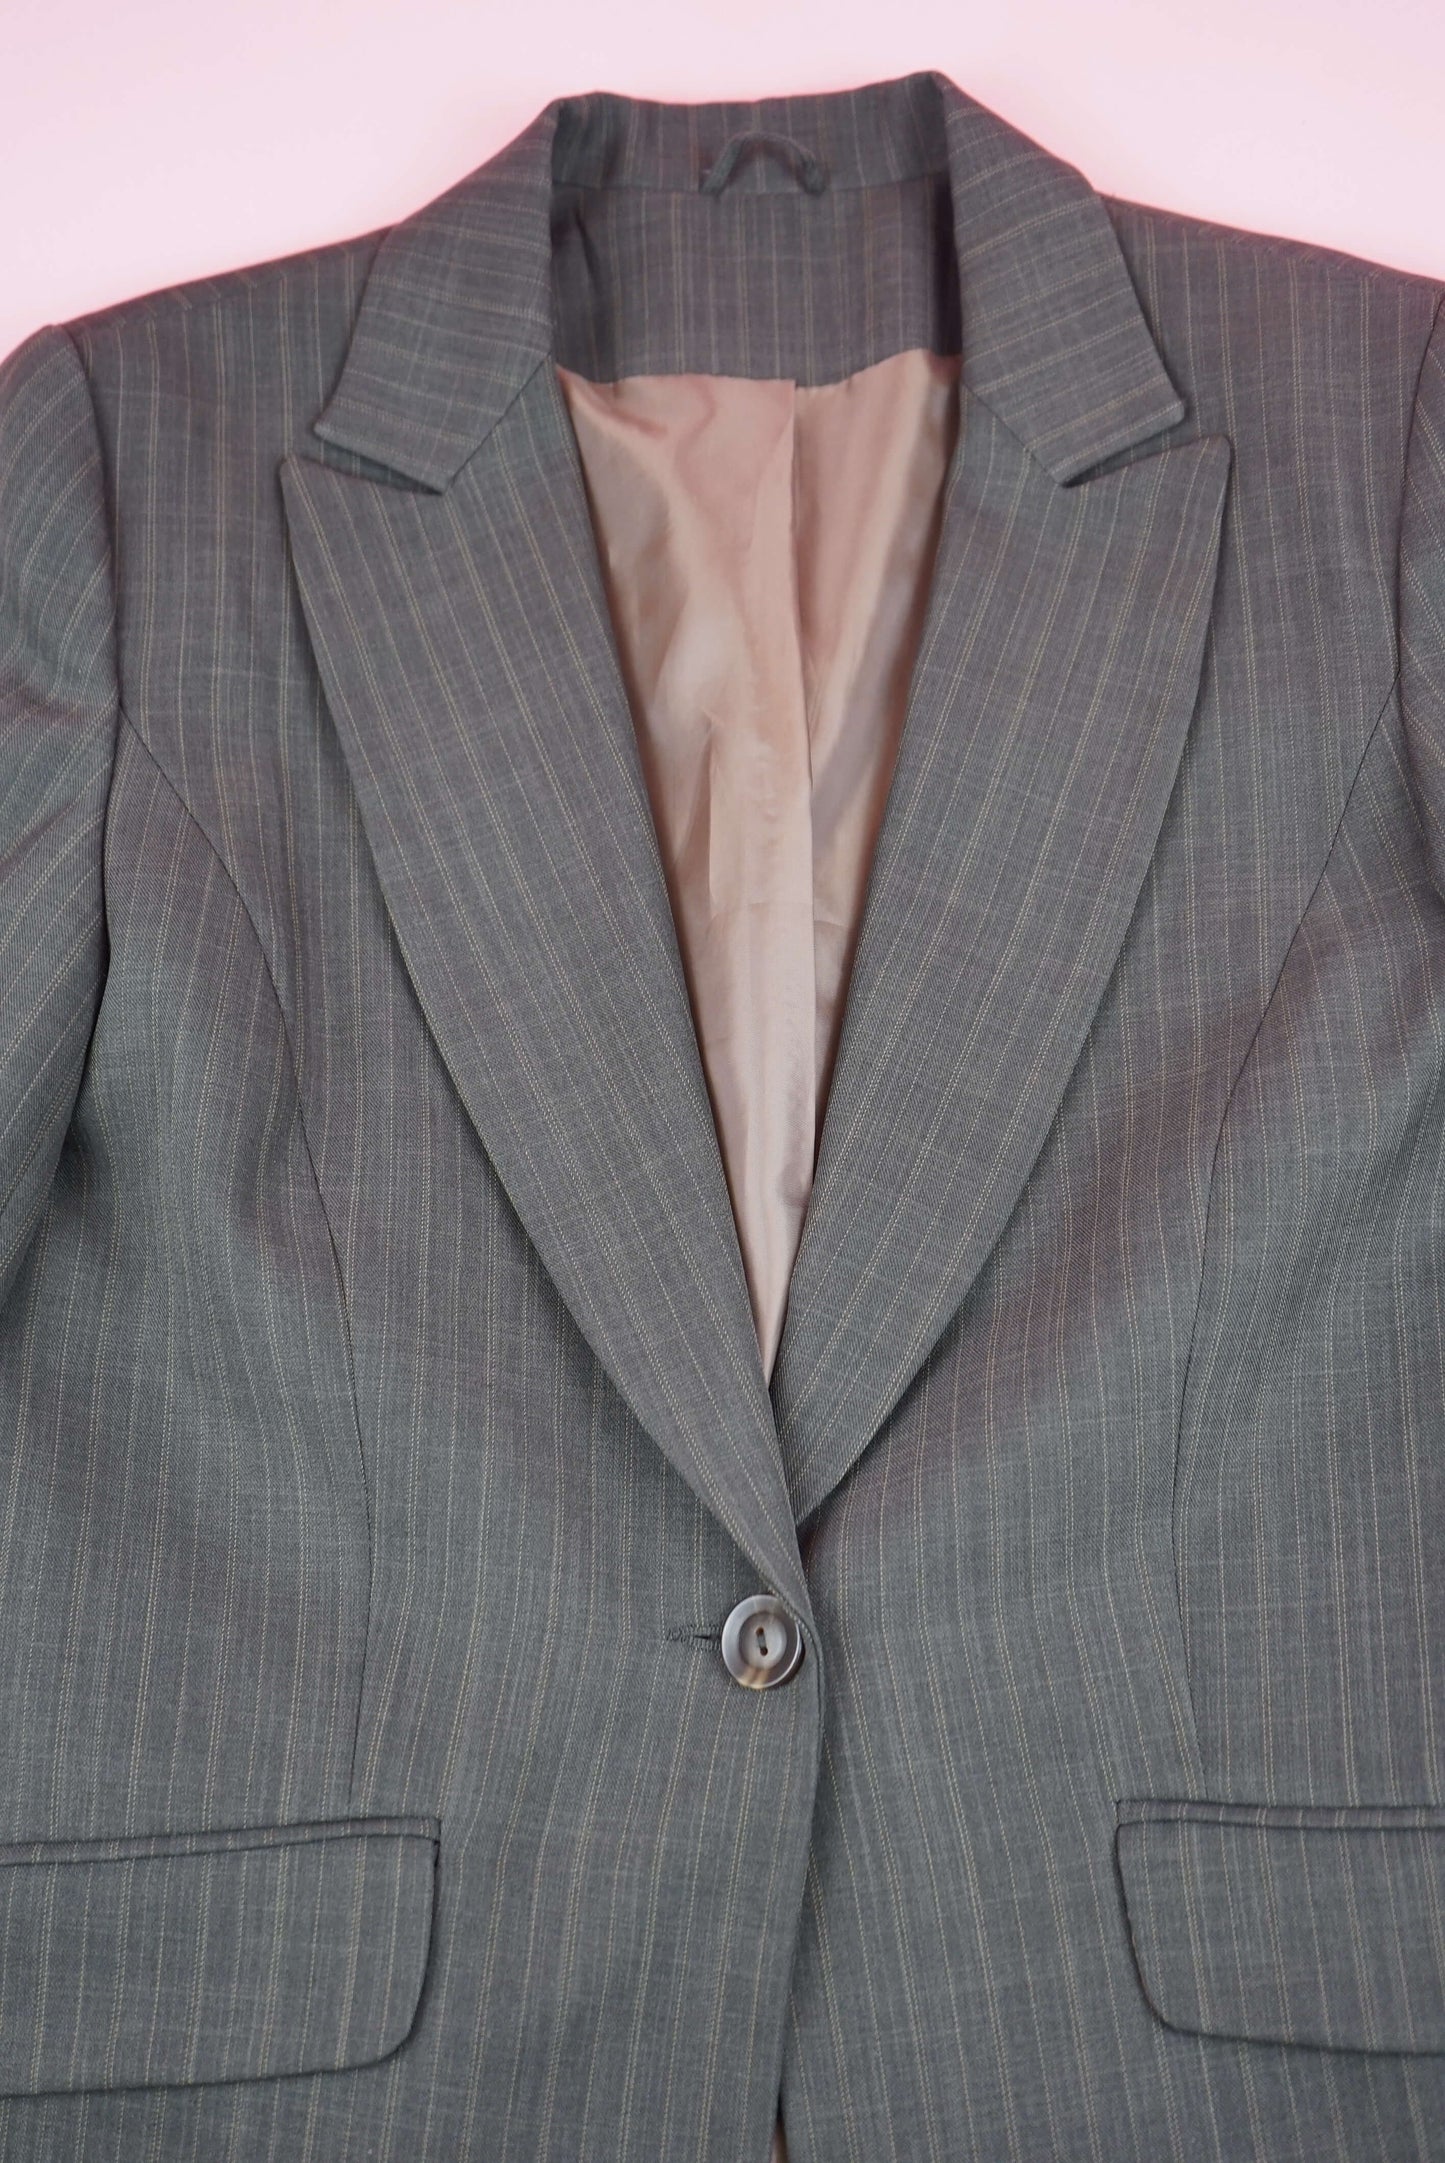 Brown Pinstripe Womens Blazer Suit Vintage Two Piece Suit Set Low Rise Trousers Suit Size M-L